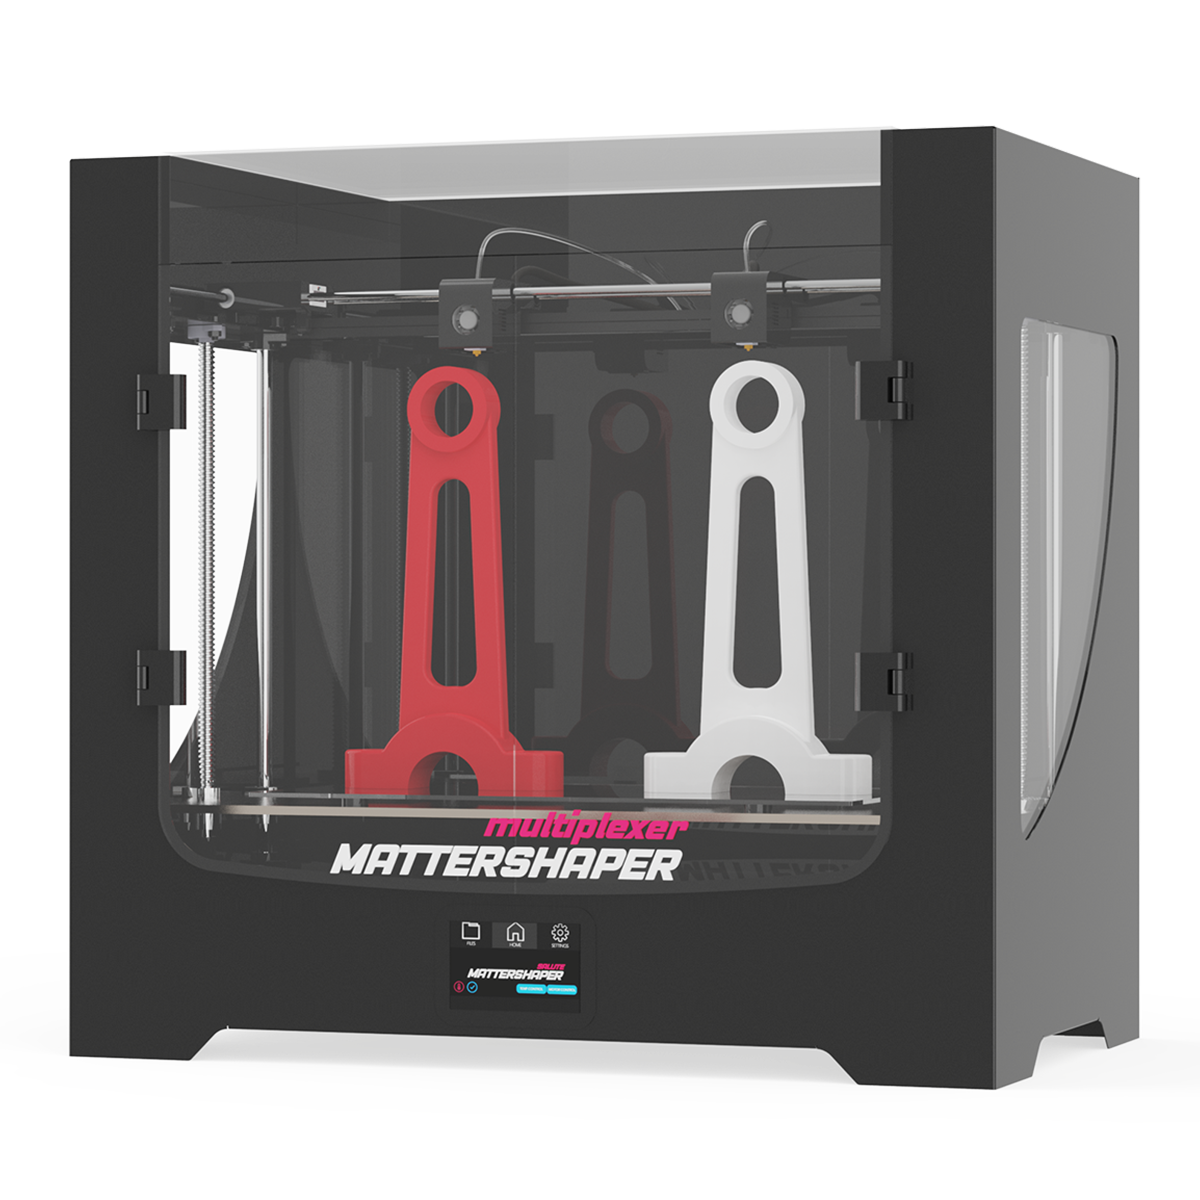 Mattershaper Multiplexer 3D Printer